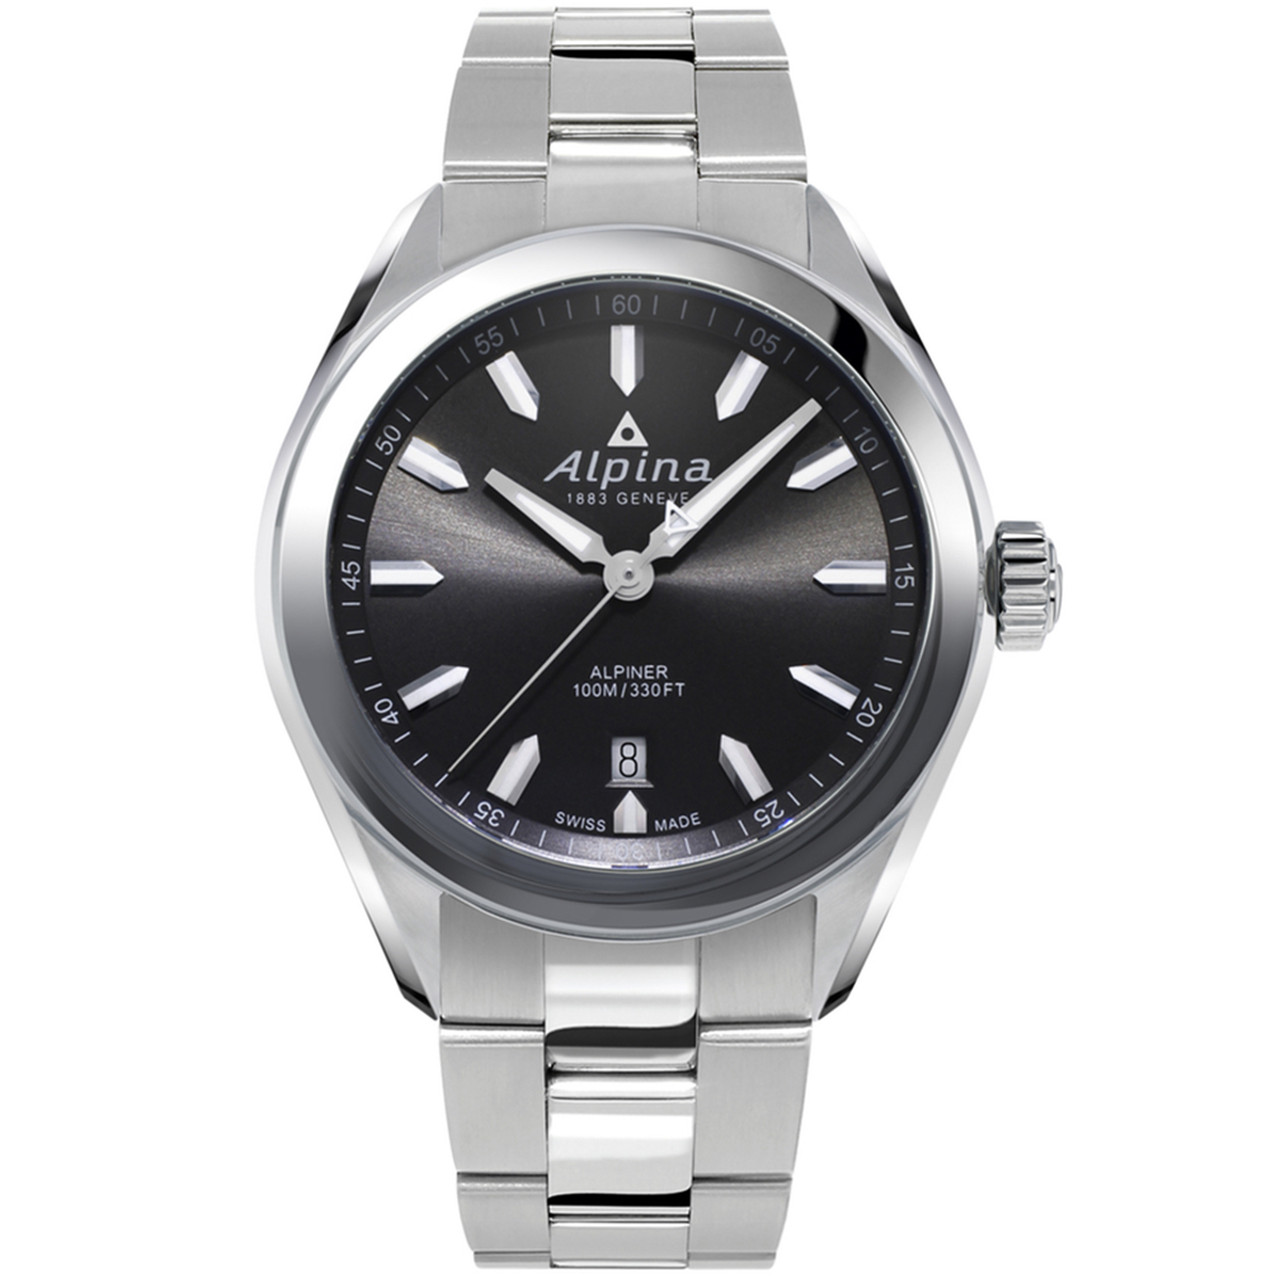 Alpina watch repairs